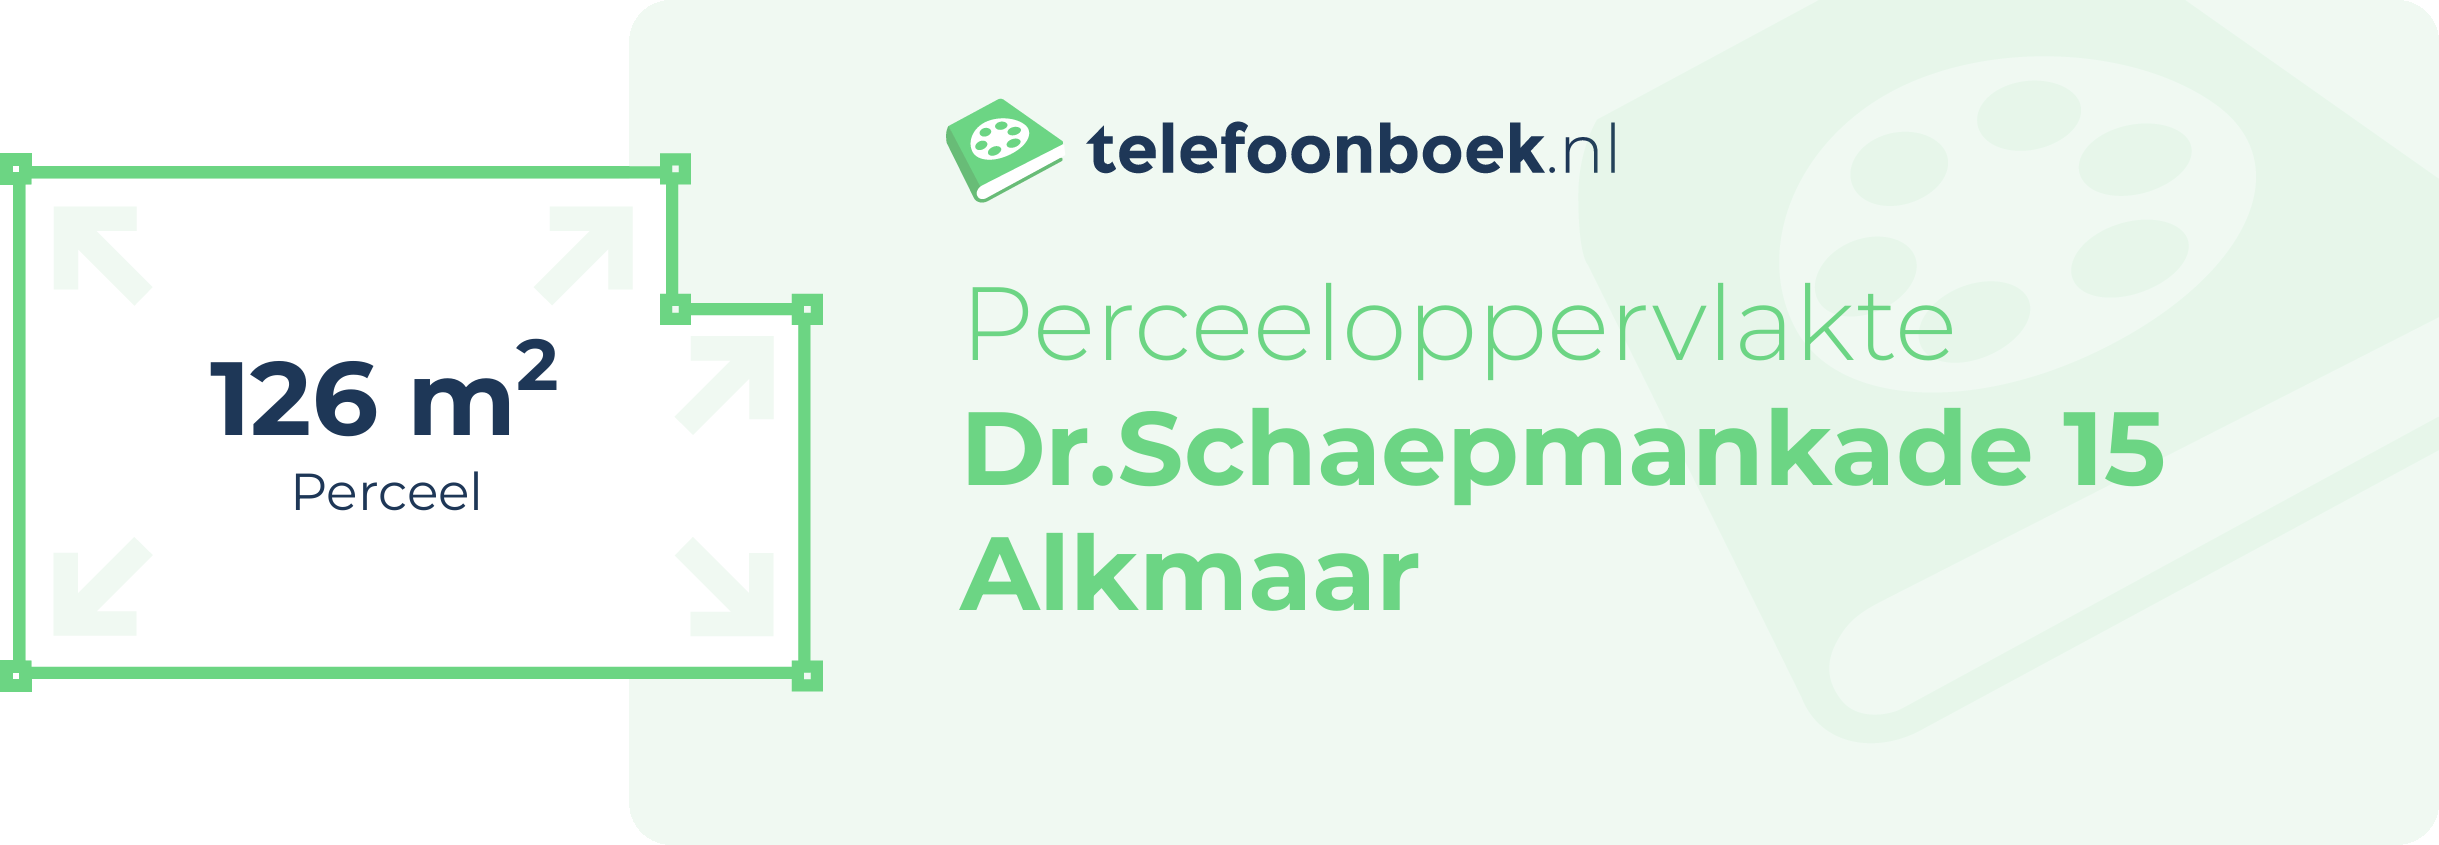 Perceeloppervlakte Dr.Schaepmankade 15 Alkmaar